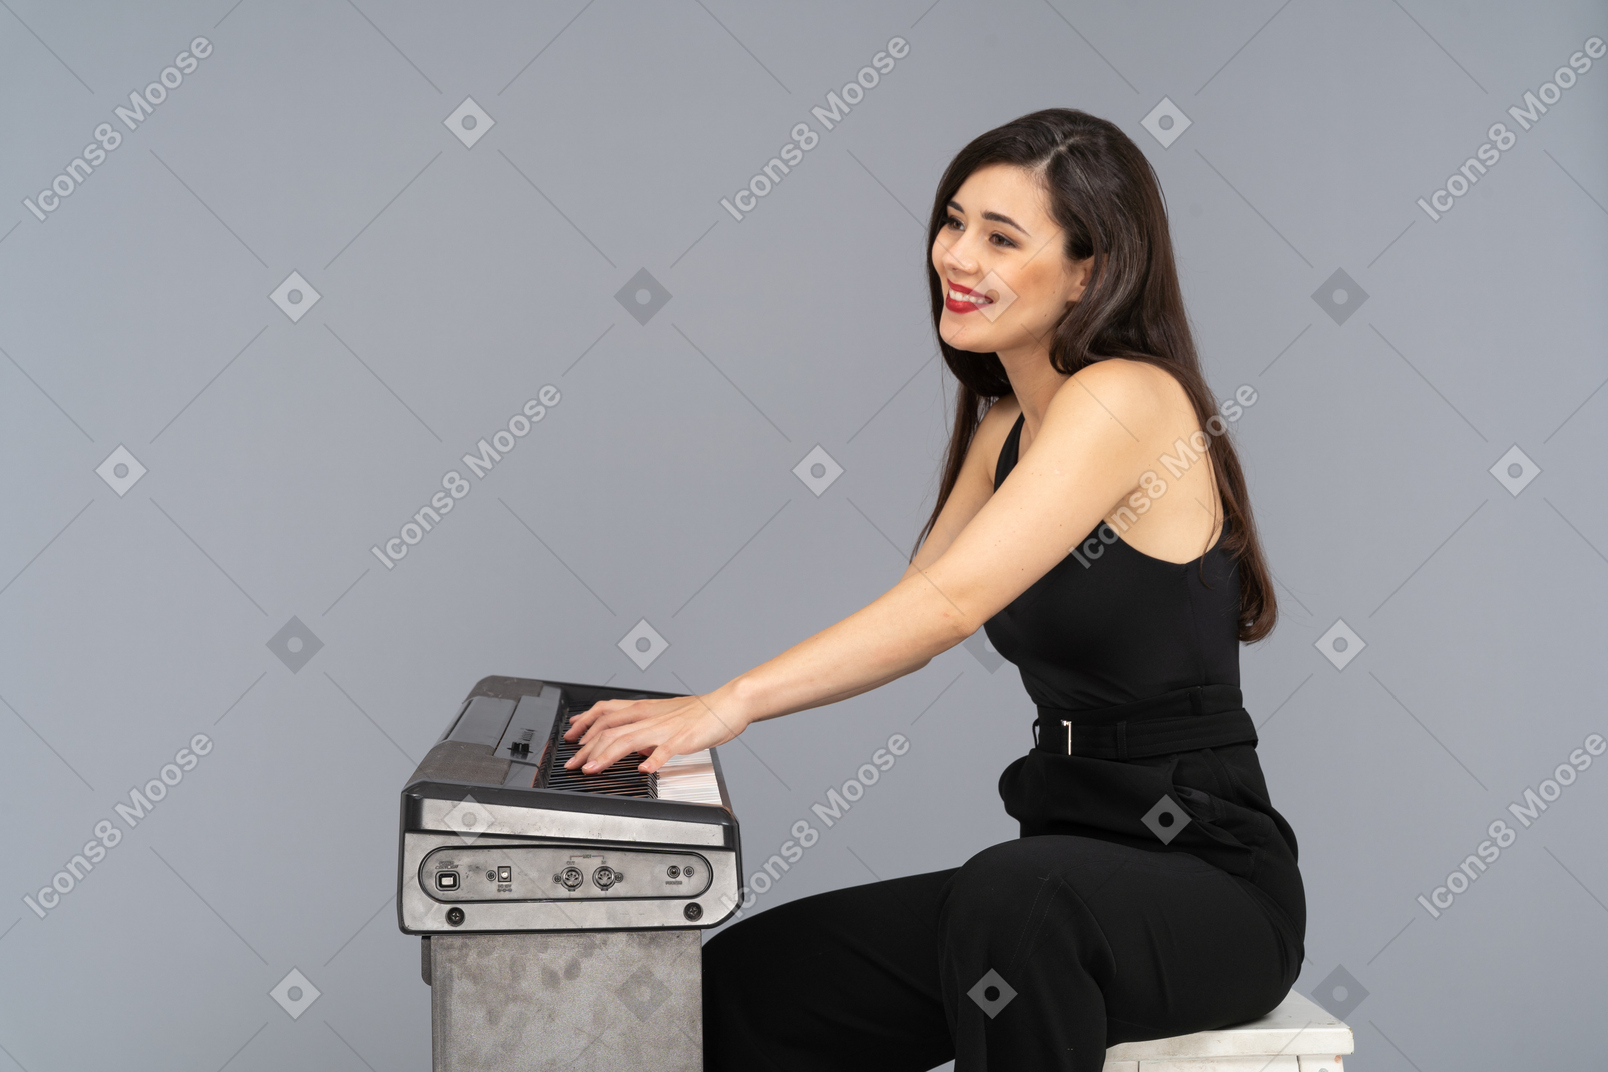 Vista lateral de uma jovem sorridente sentada de terno preto enquanto toca piano